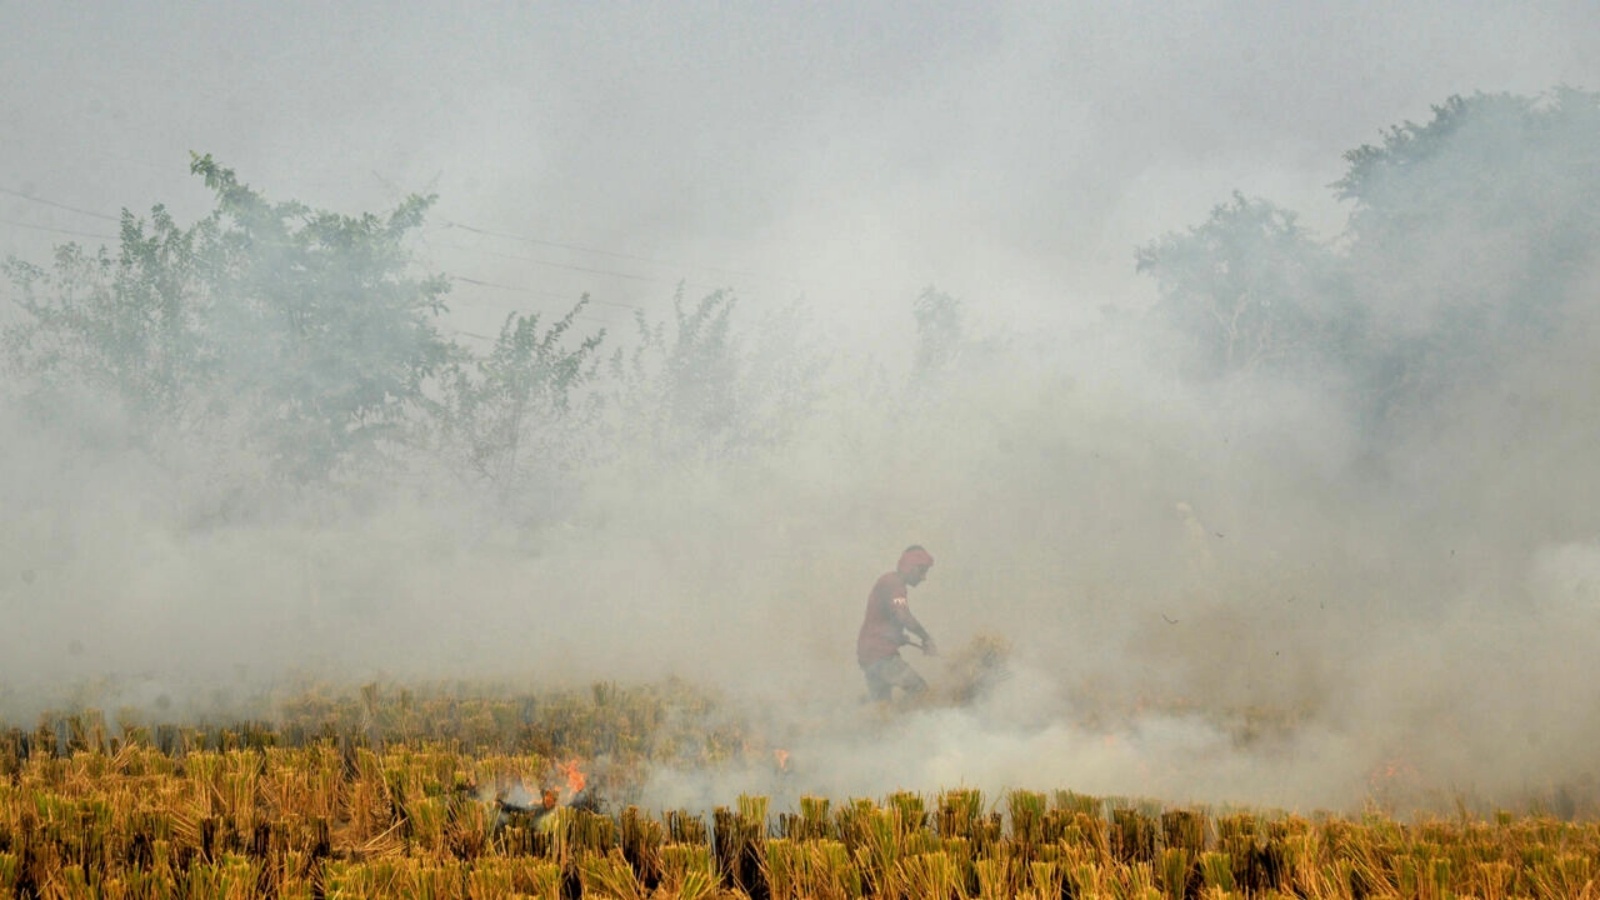 يتم حرق حقول الأرز بعد الحصاد في شمال الهند كل عام